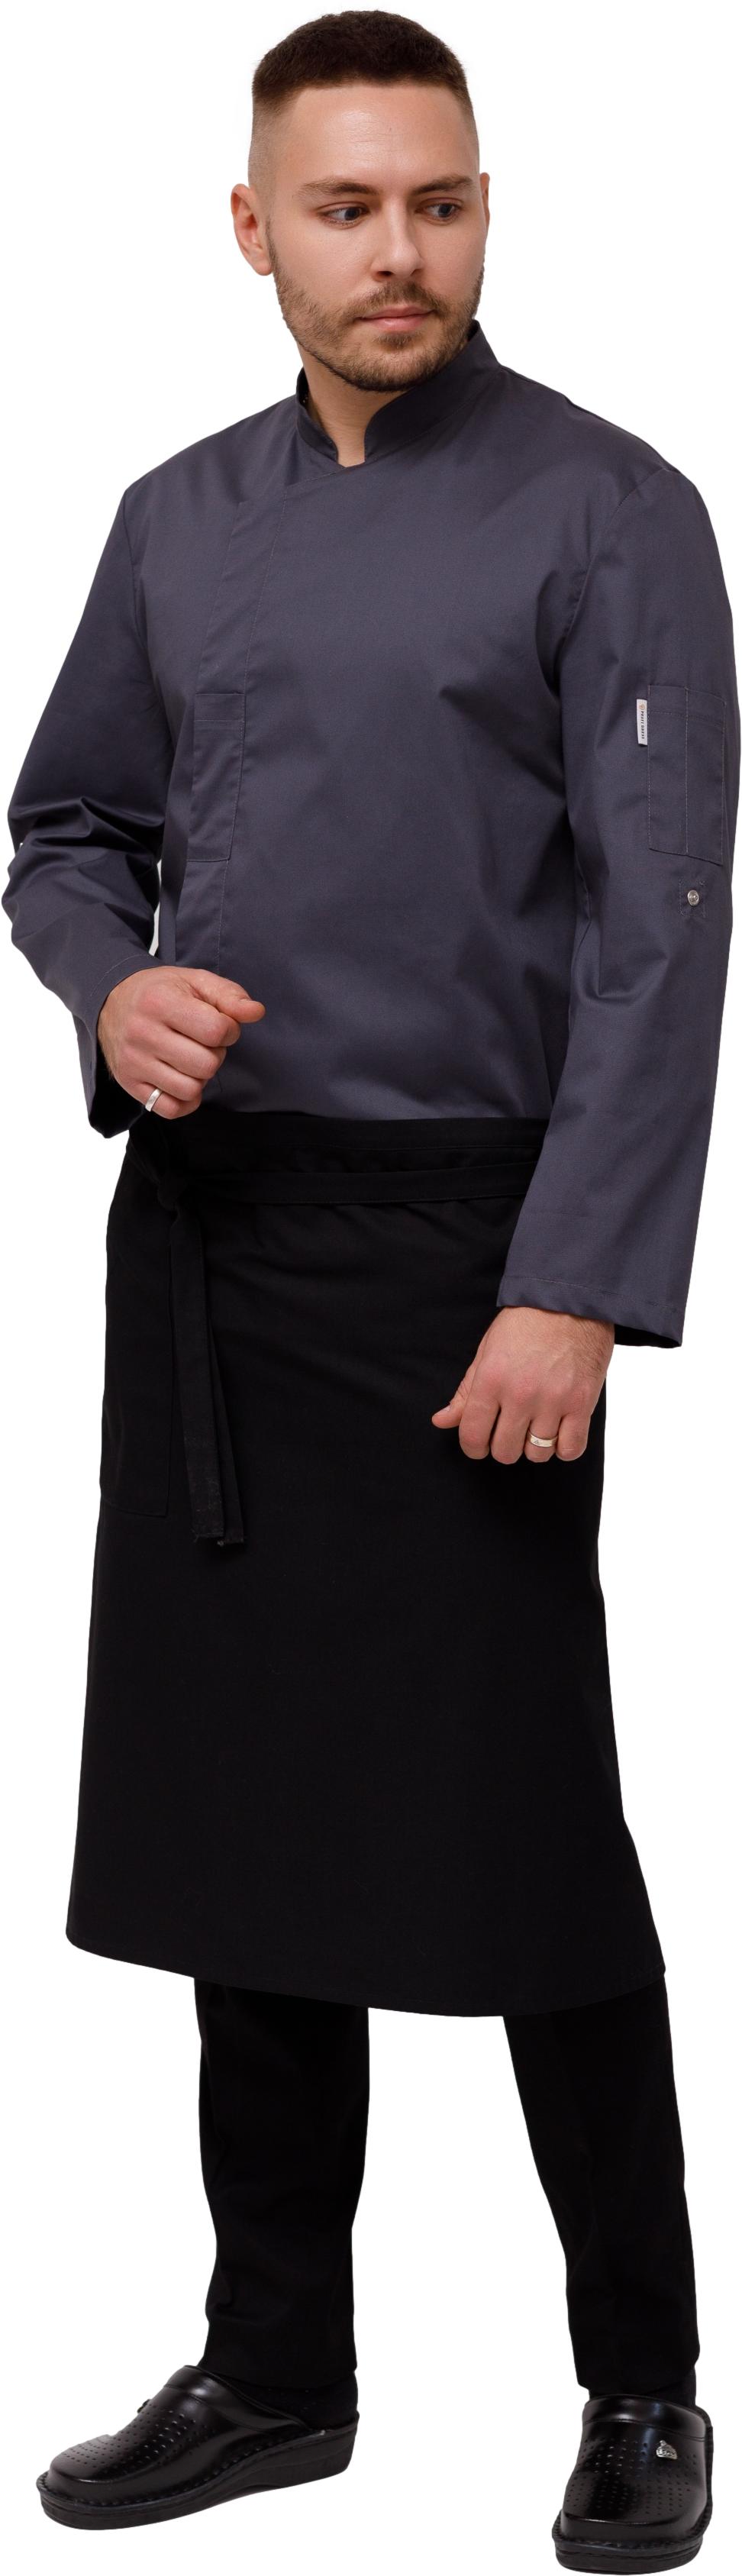 Комплект для повара LINCOLN - китель / фартук / брюки мужской темно серый 0